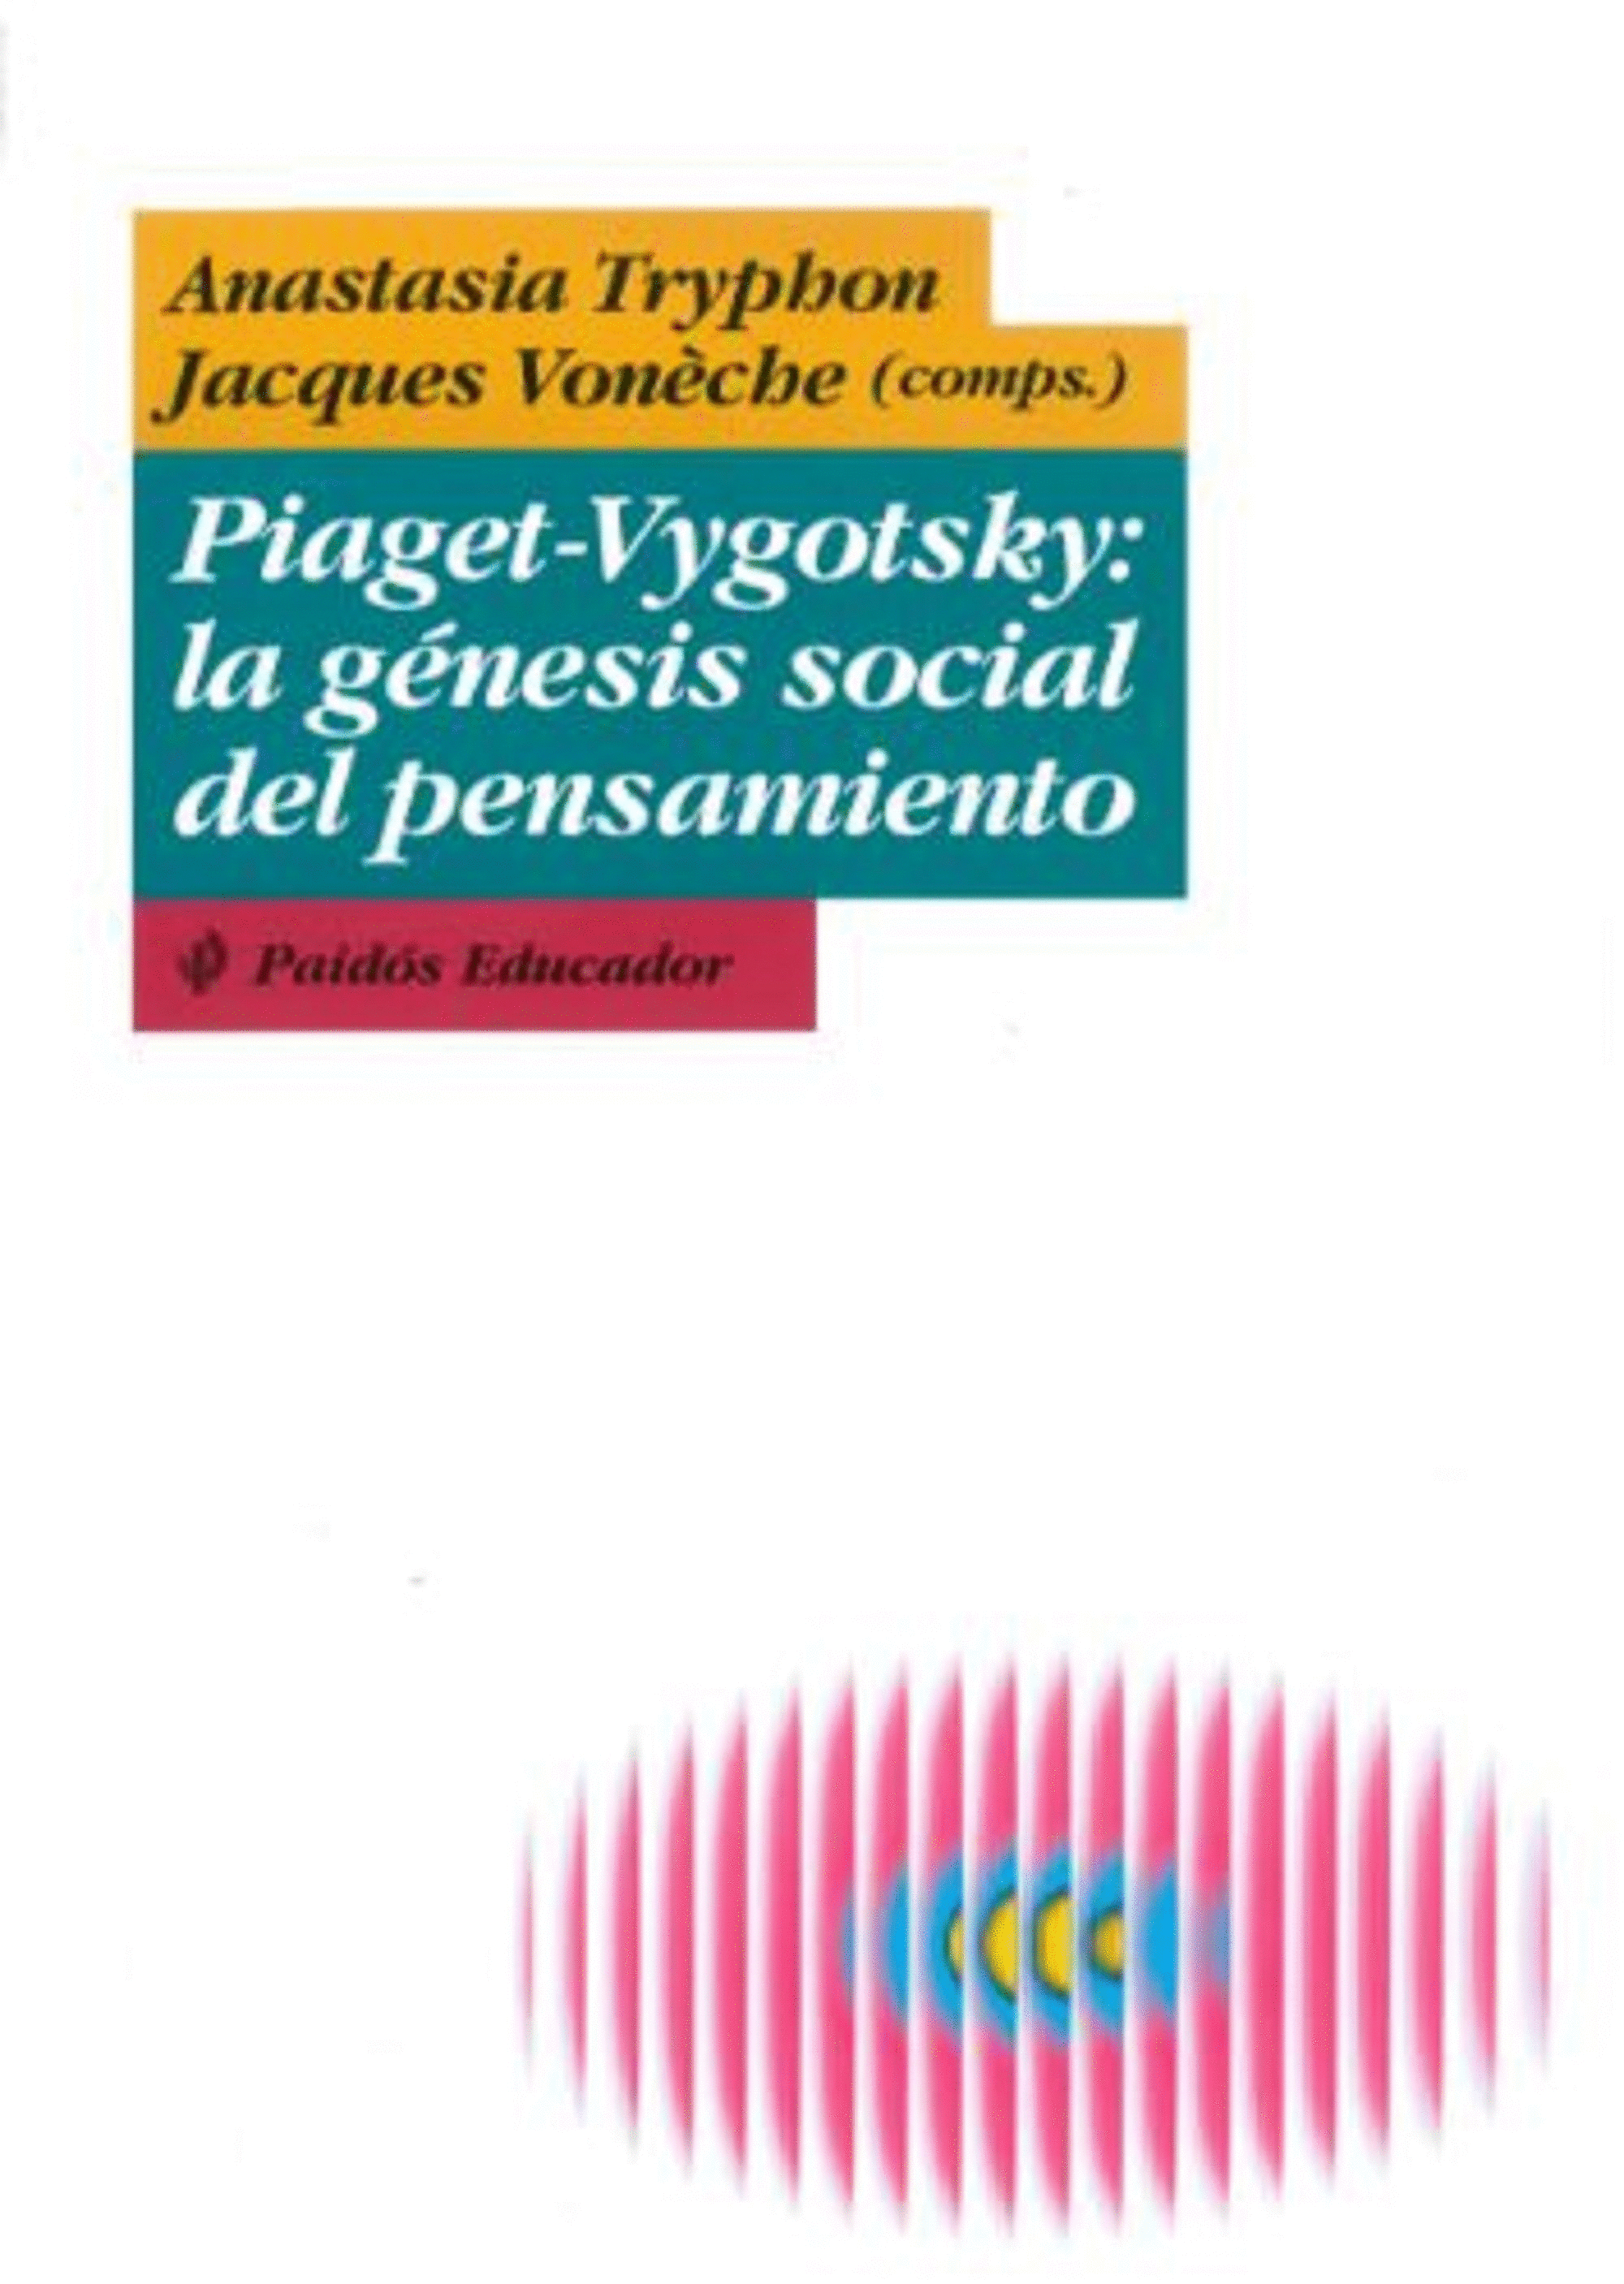 PIAGET-VYGOTSKY: LA GENESIS SOCIAL DEL PENSAMIENTO